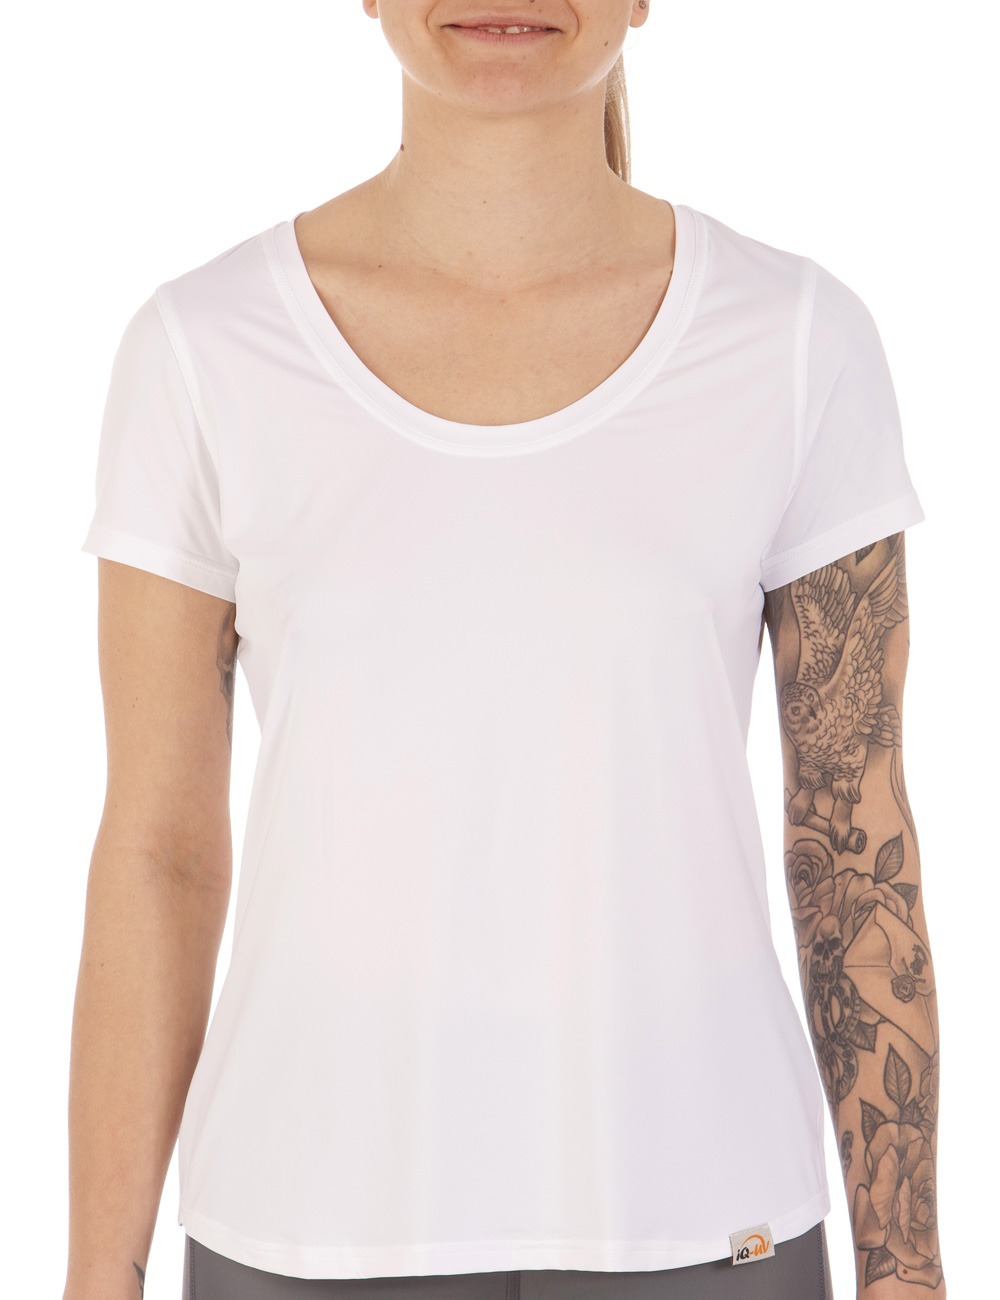 UV FREE Weitsicht shirt kurzarm weiß front